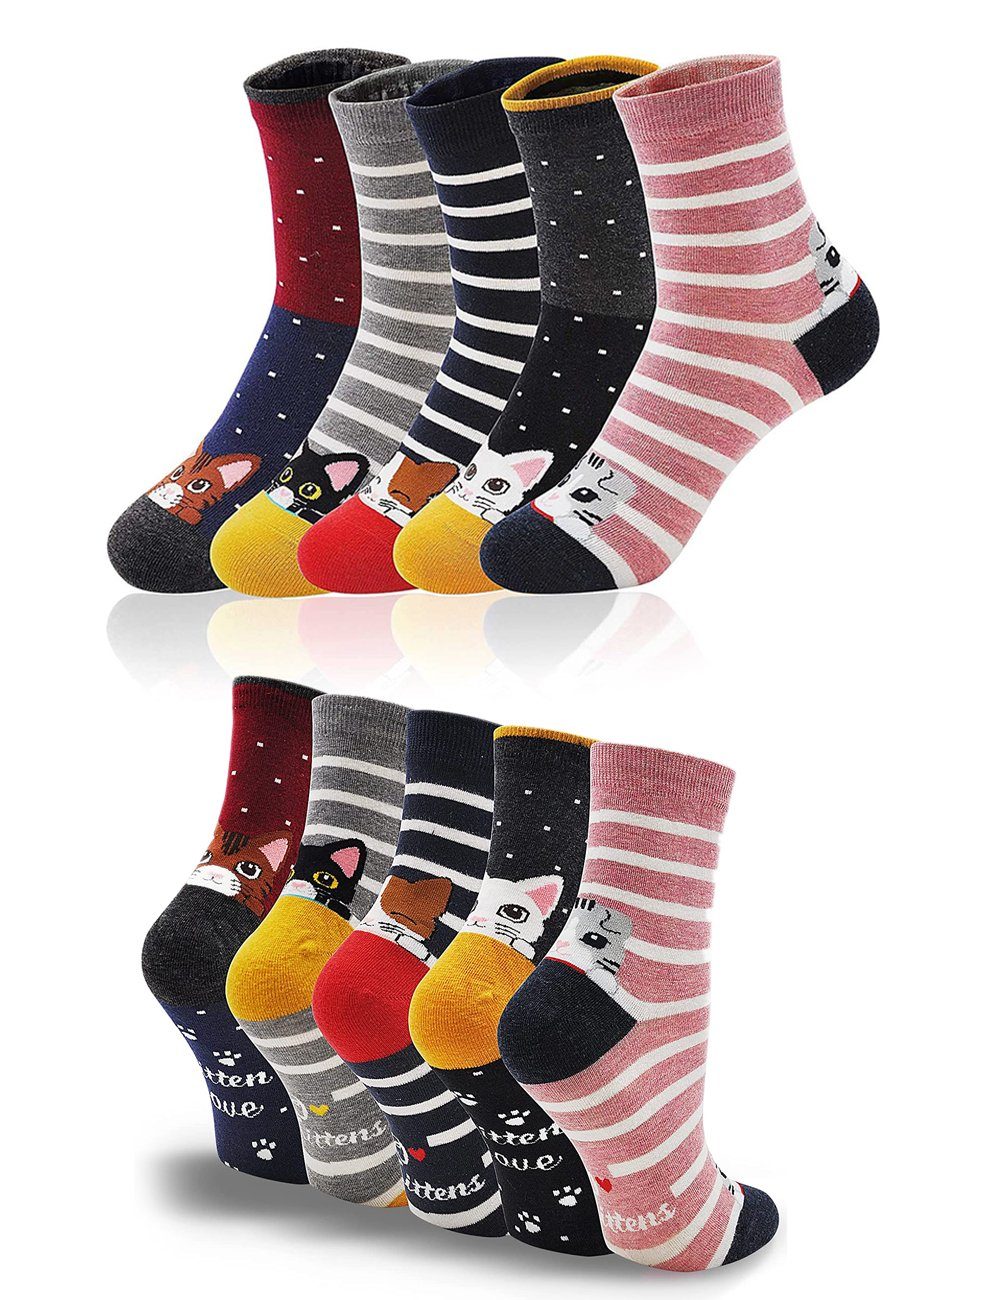 Alster Herz Freizeitsocken 5x lustige Socken, Katzenmotiv, bunt, trendy, süßes Design, A0344 (10-Paar) atmungsaktiv